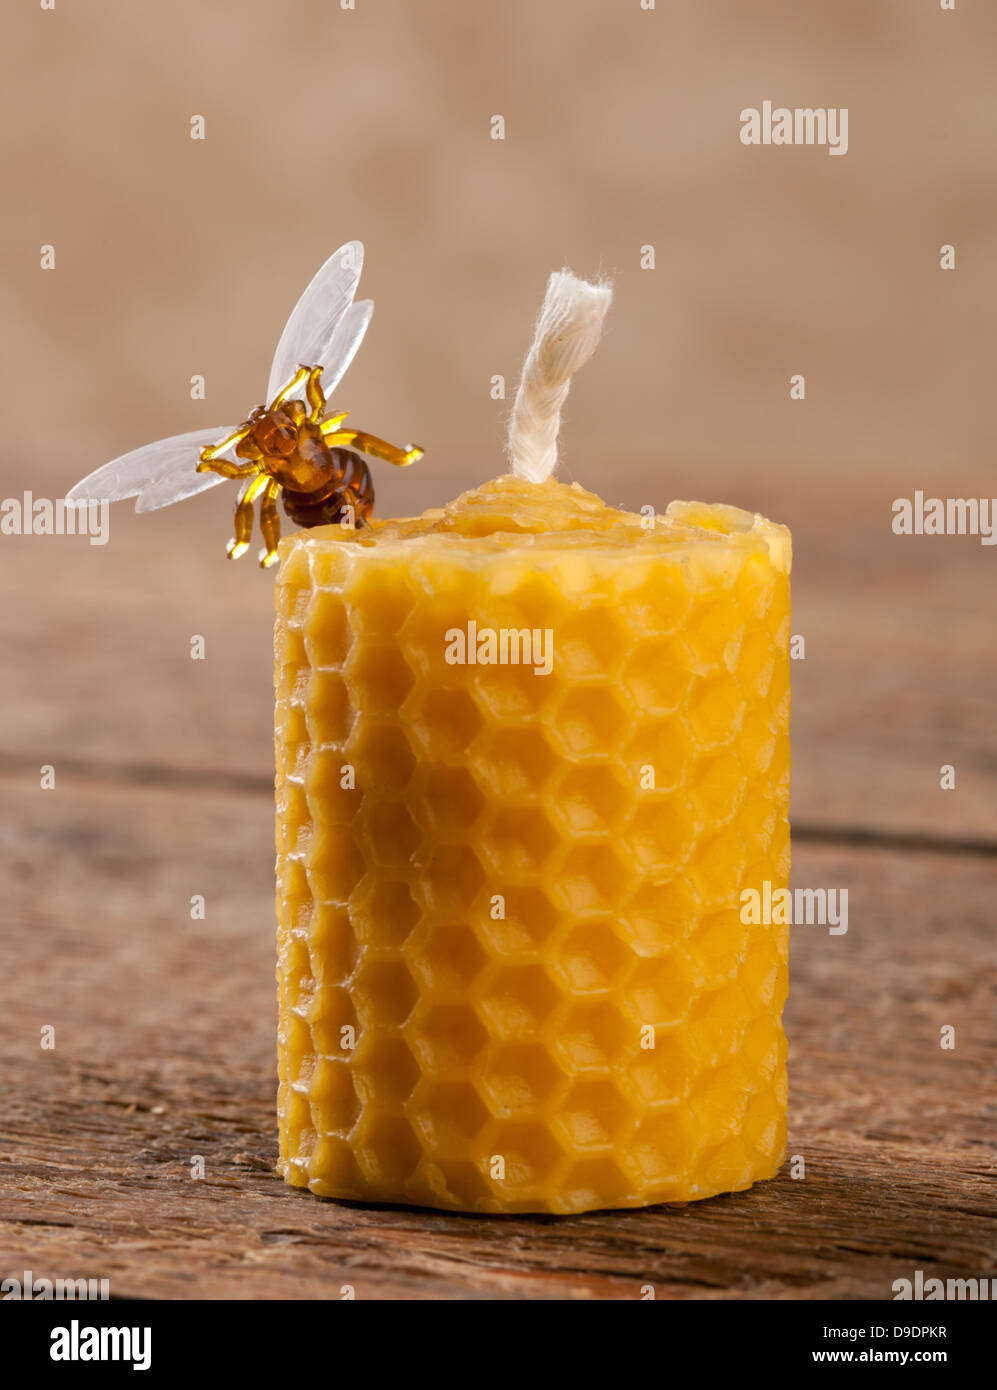 Candele in cera d'api con effetto alveare - Apicoltura Feri